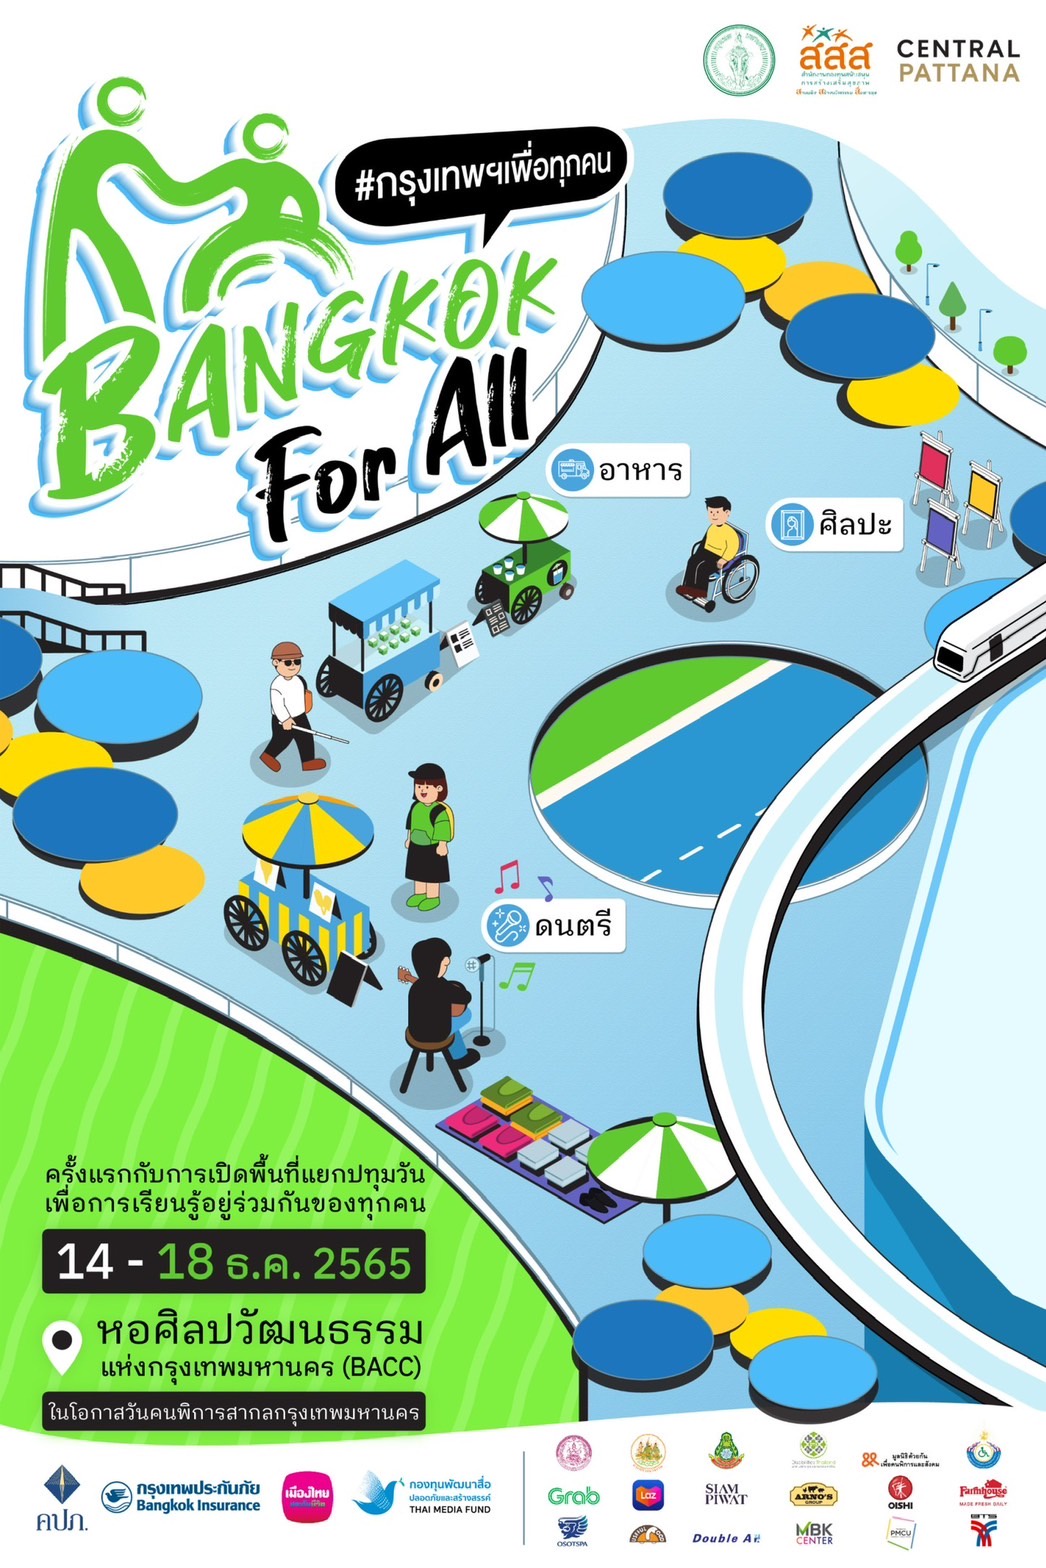 เอ็ม บี เค เซ็นเตอร์ สนับสนุนการแสดงร่วมเทศกาล BANGKOK For ALL ในวันคนพิการสากล